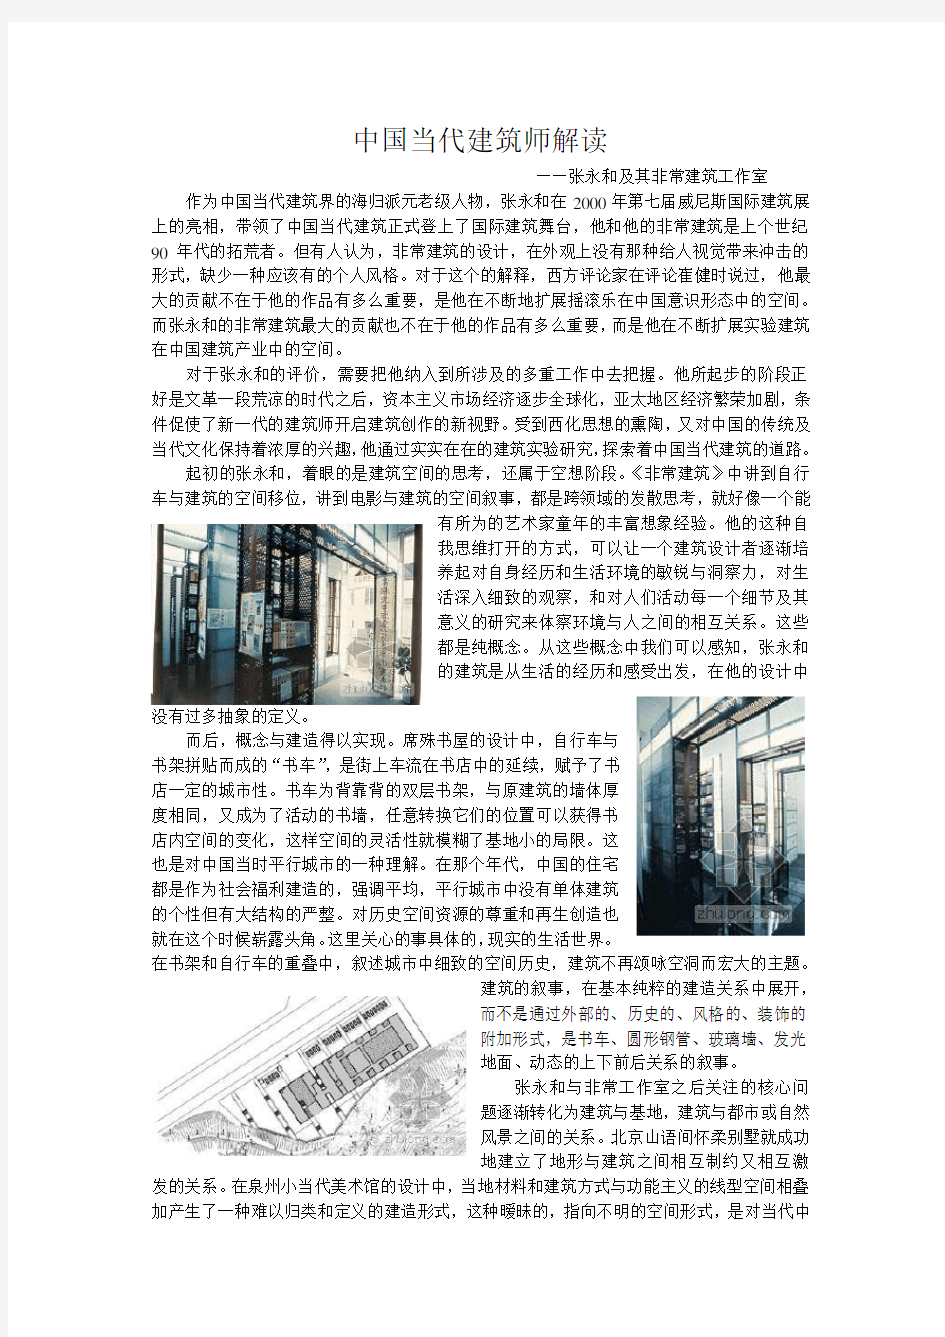 中国当代建筑师解读——张永和(1)